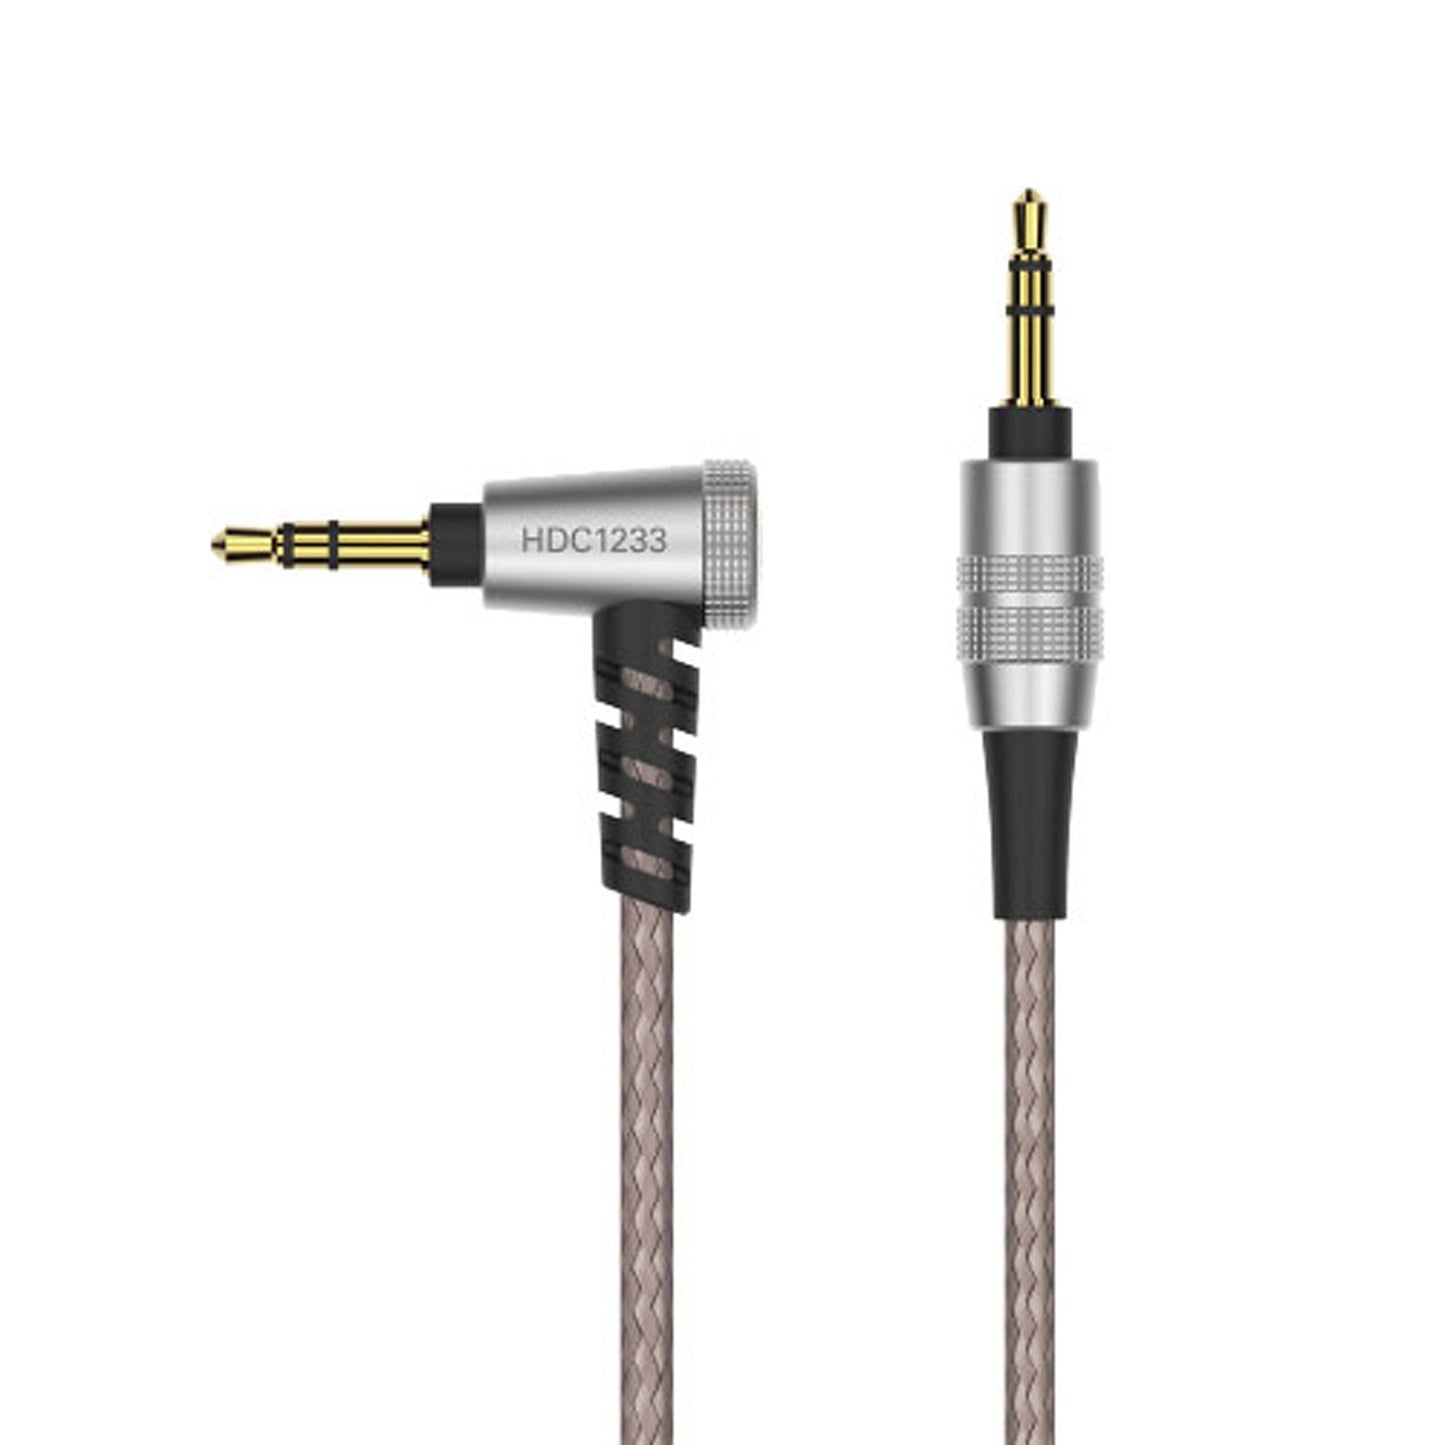 Audio-Technica HDC1233/1.2 Detachable Audiophile Headphone Cable for On-Ear & Over-Ear Headphones